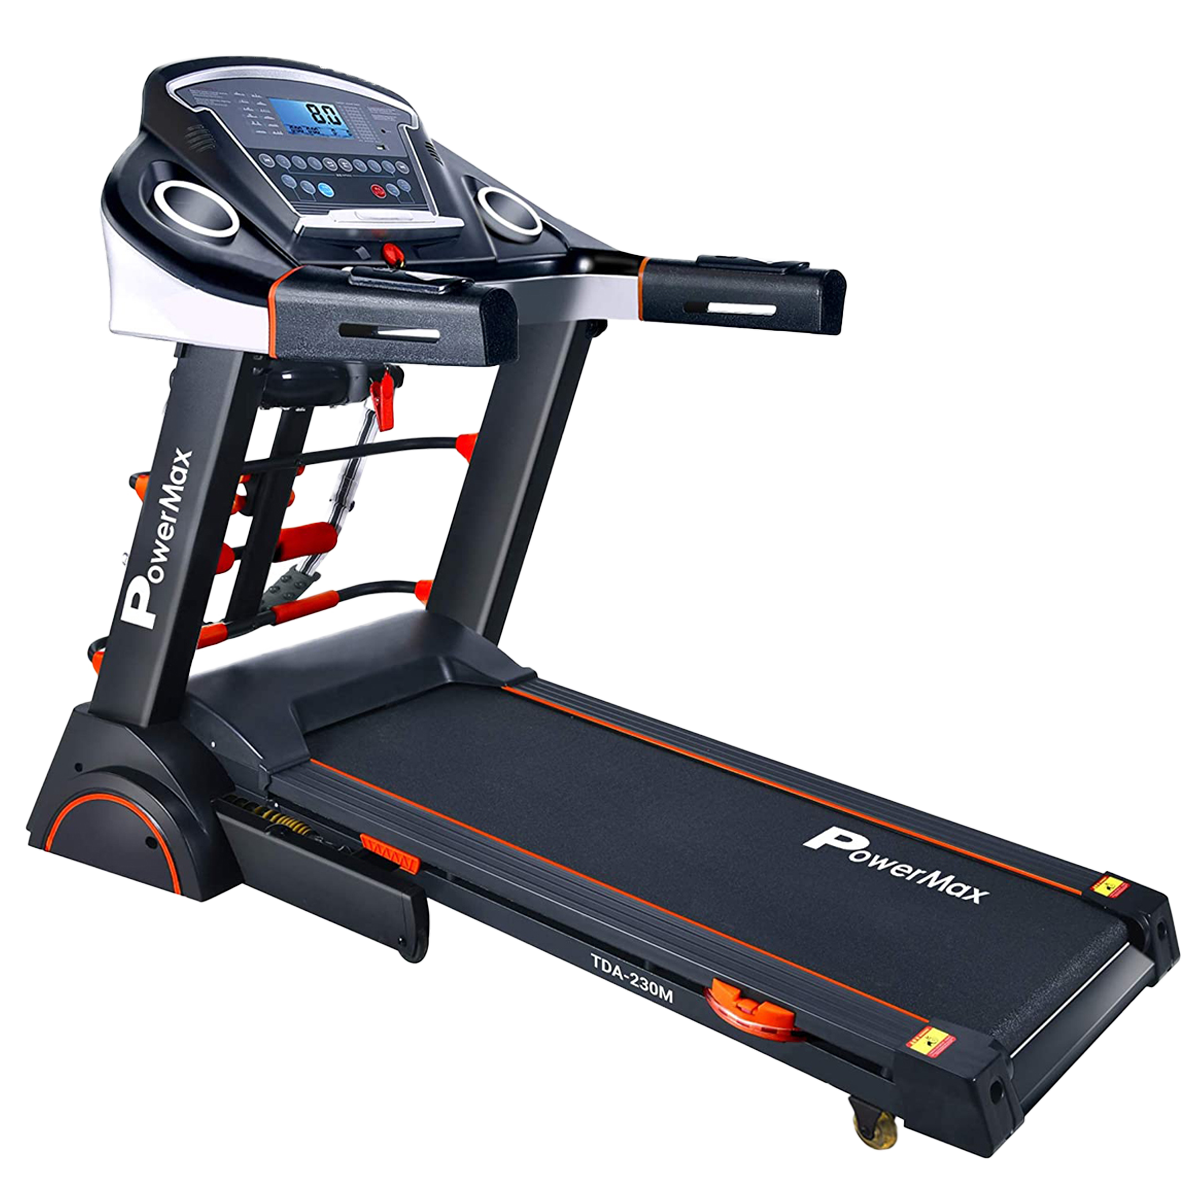 PowerMax MaxTrek 3 HP Foldable Motorized Treadmill (Anti-Bacterial Powder Coat Finish, TDA-230M, Black/Orange)_1